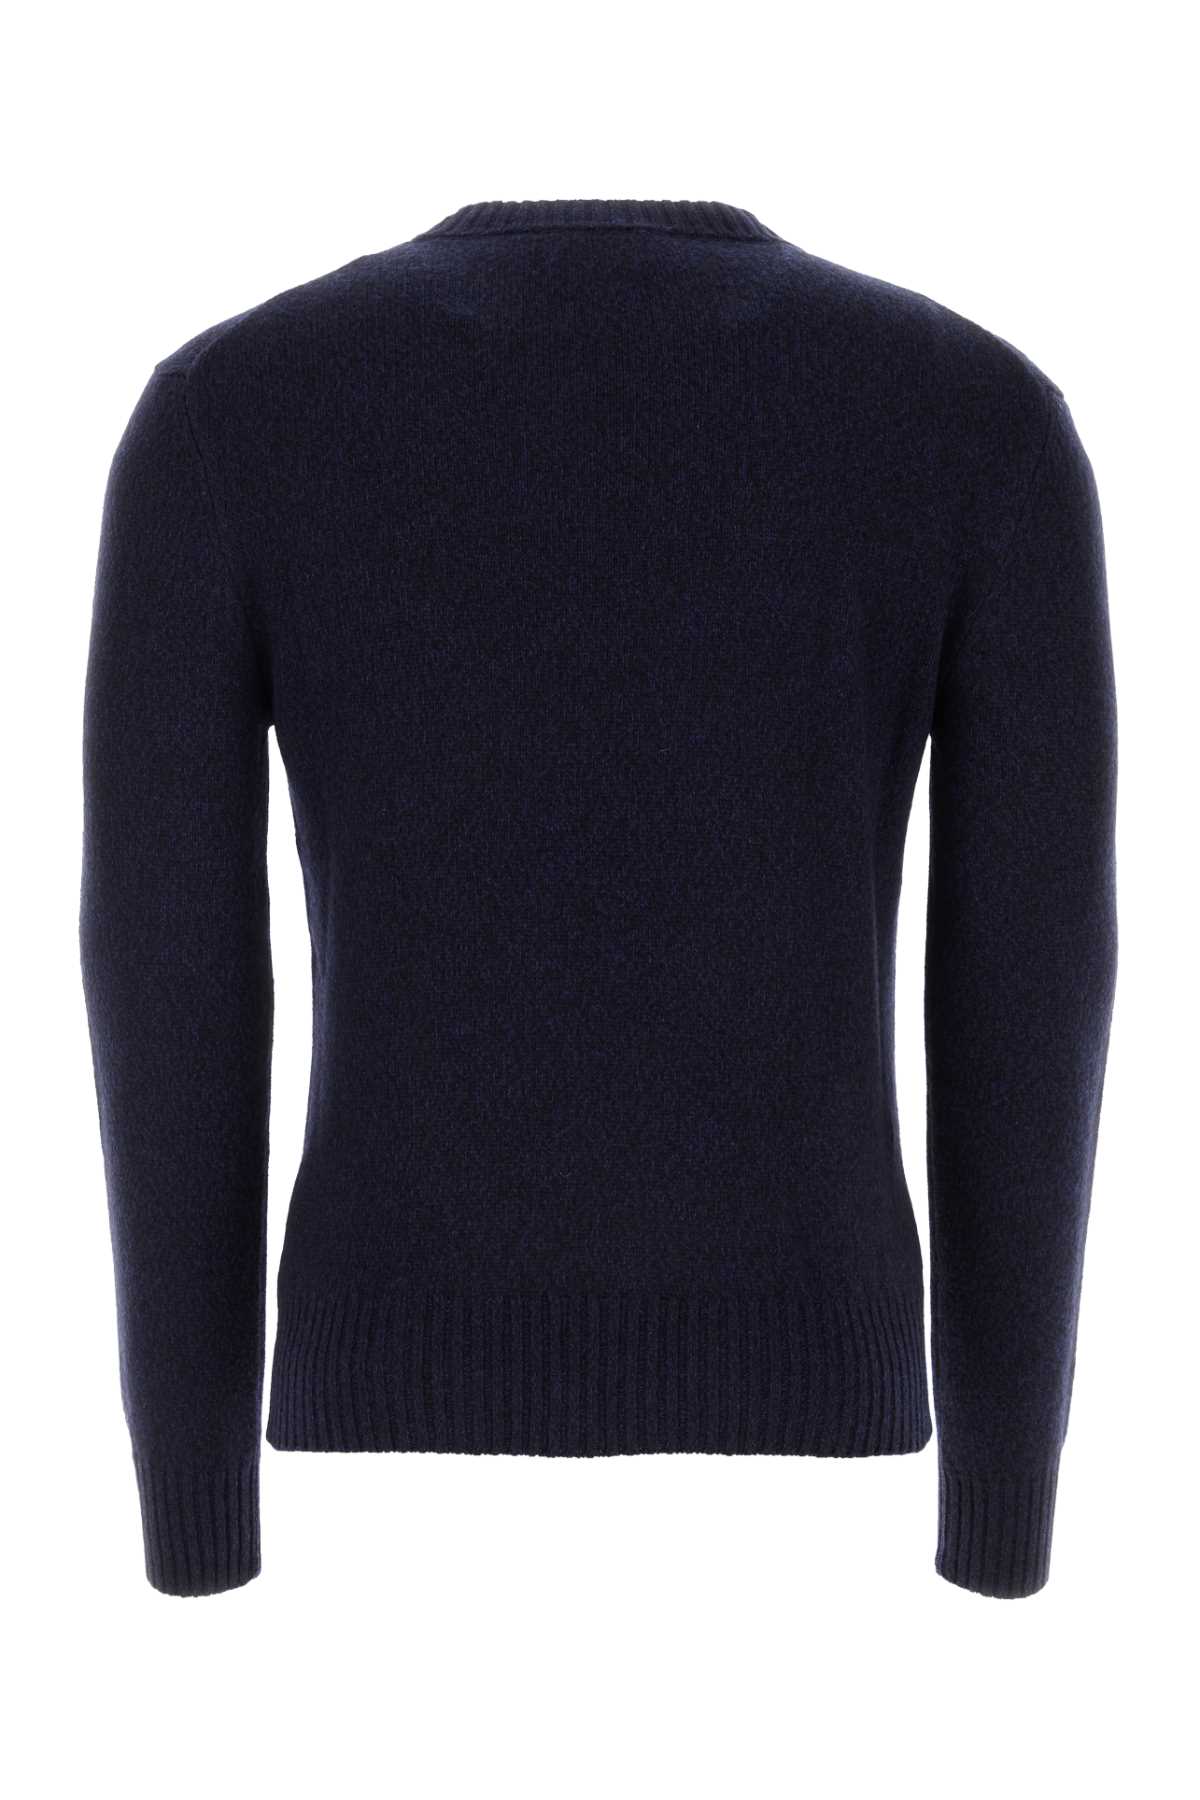 Shop Ami Alexandre Mattiussi Melange Blue Cashmere Blend Sweater In Nightblue